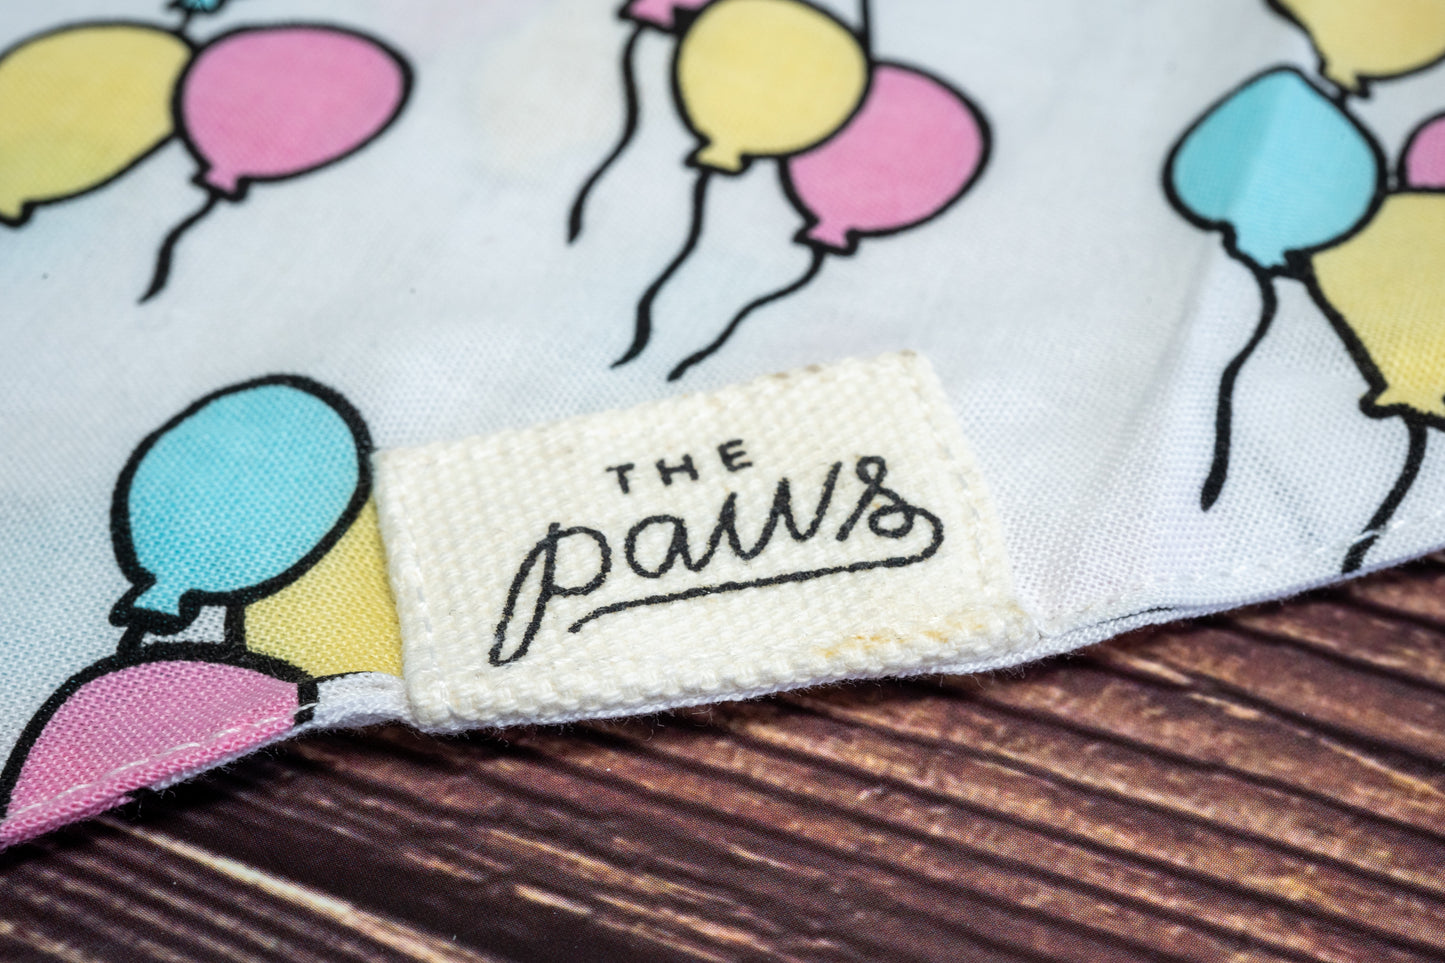 Close-up of The Paws logo on dog birthday bandana.